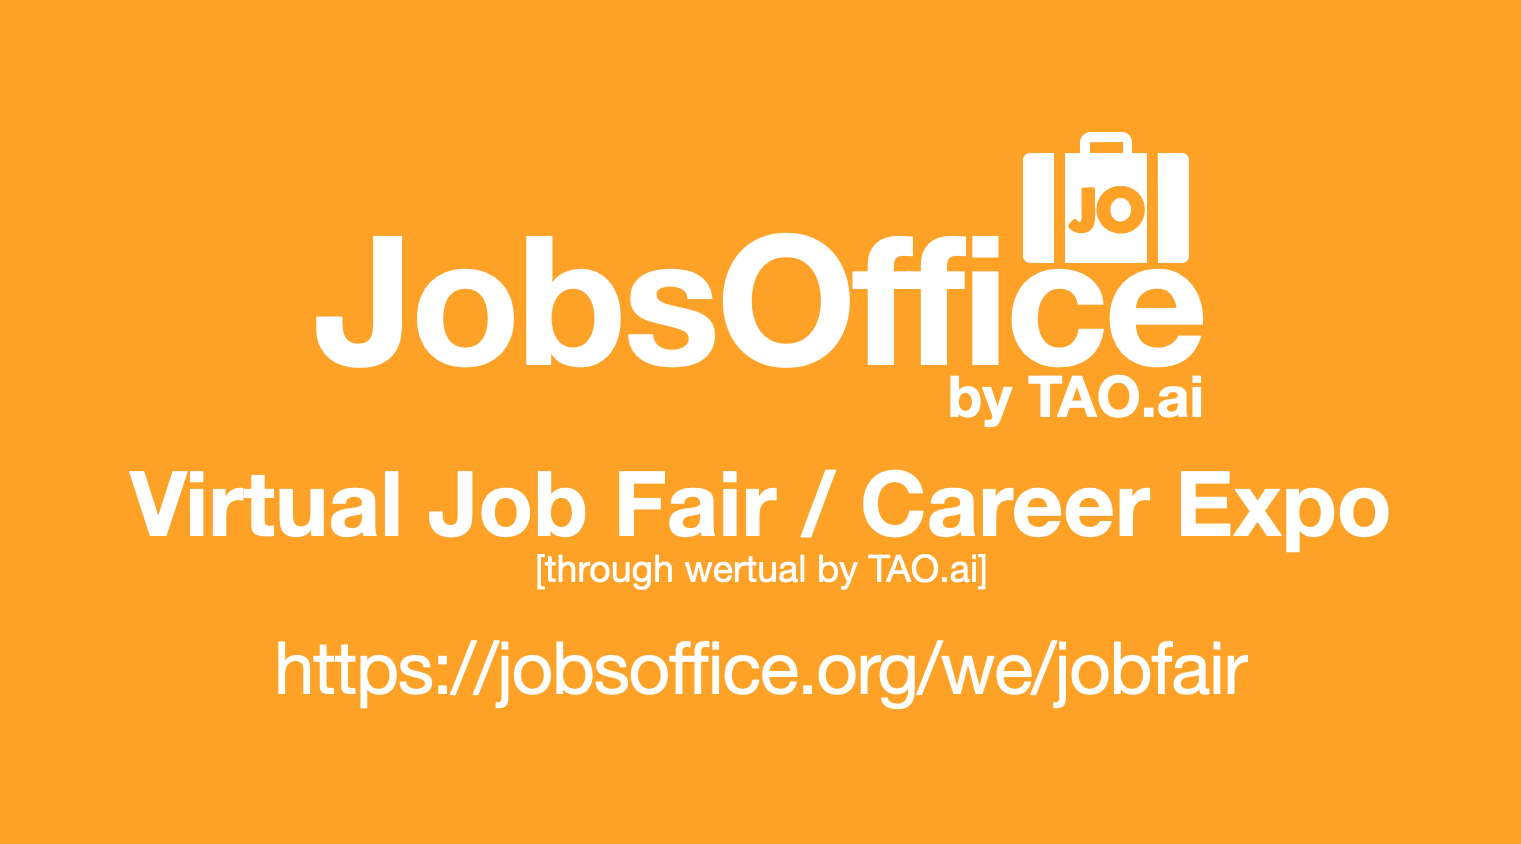 #JobsOffice Virtual Job Fair / Career Expo Event #Chicago